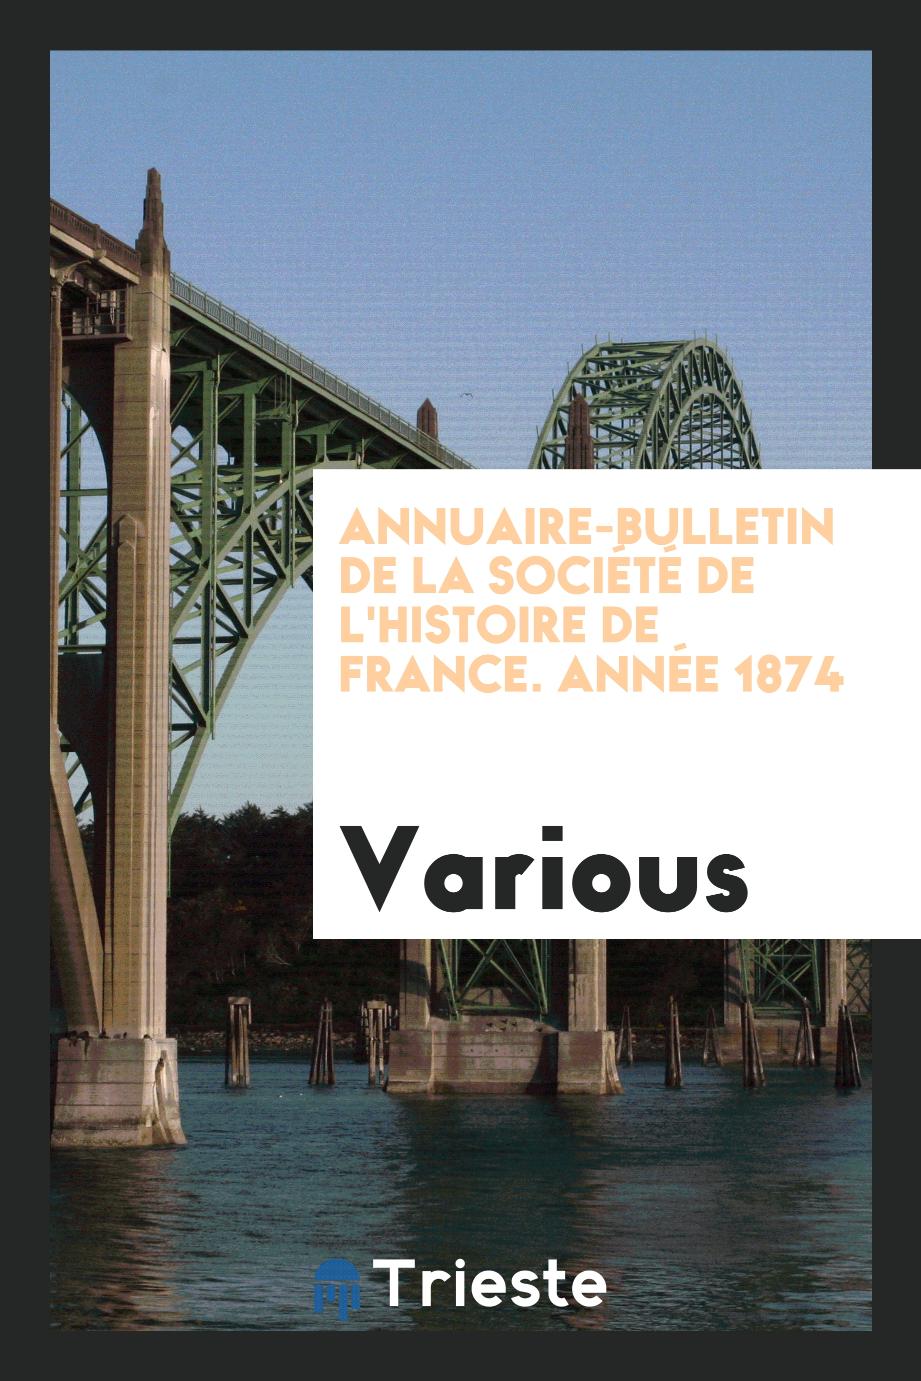 Annuaire-bulletin de la Société de l'histoire de France. Année 1874